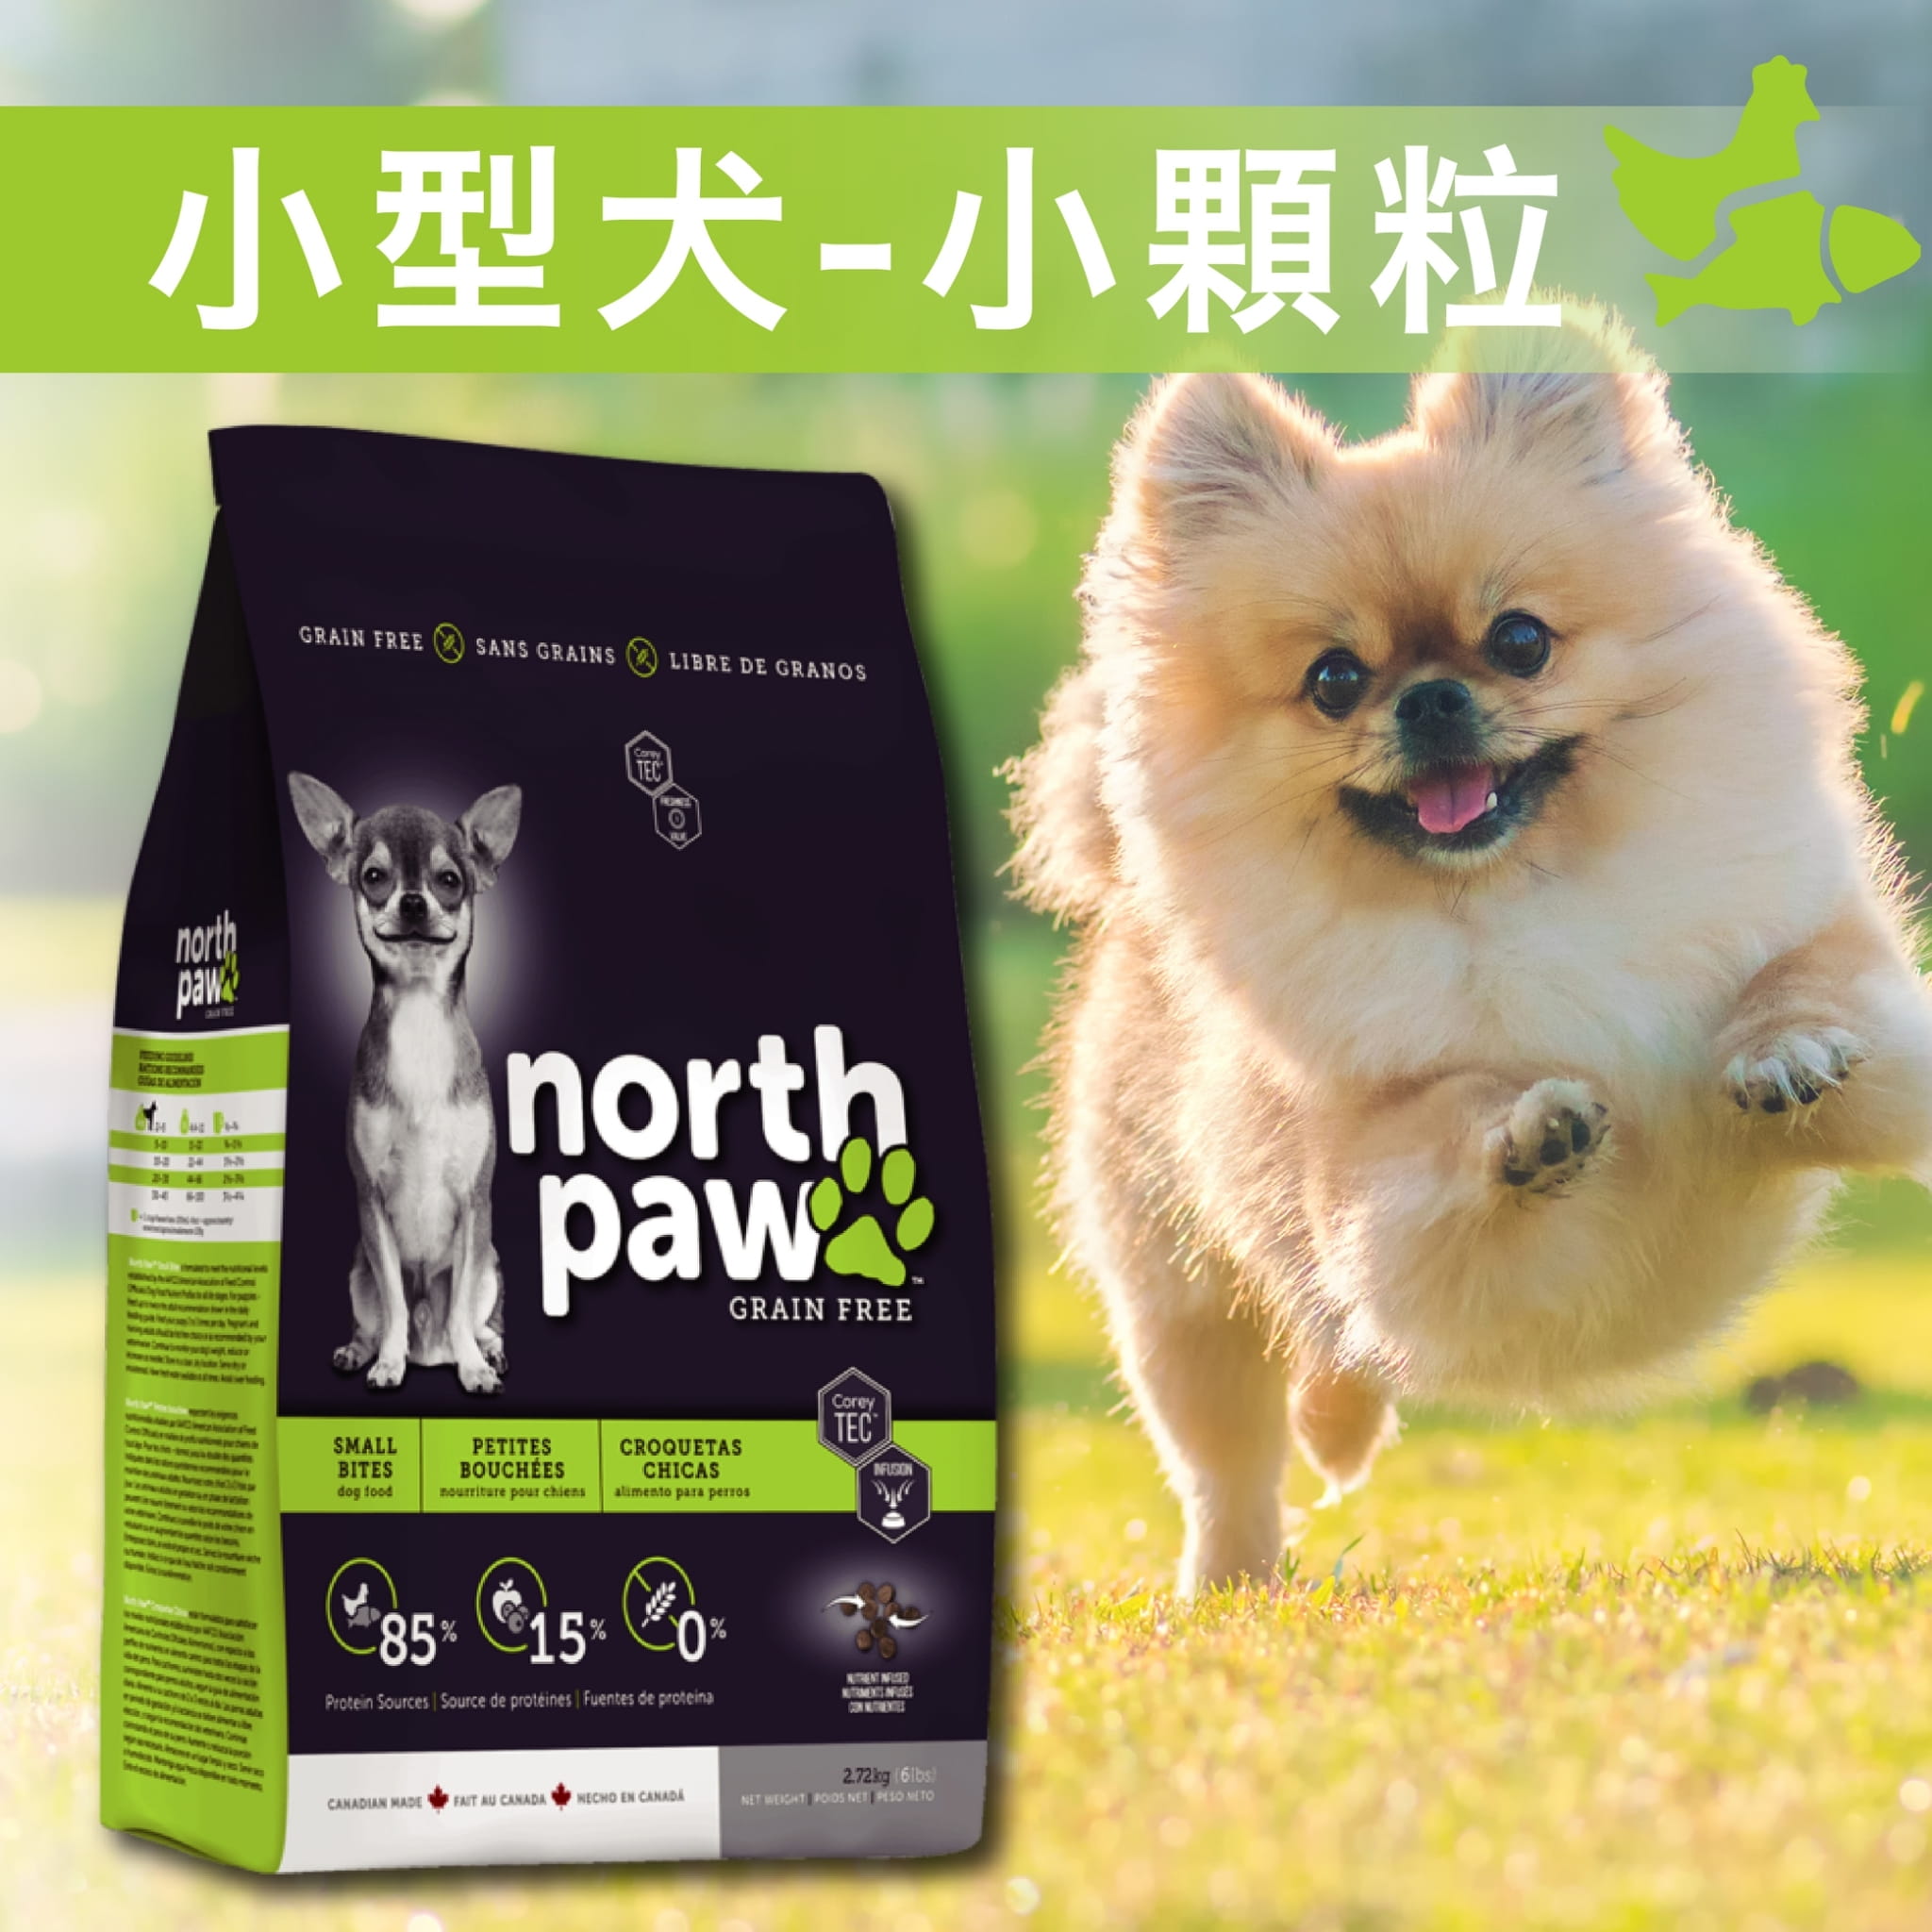 【野牧鮮食northpaw】小型犬飼料(小顆粒)1kg